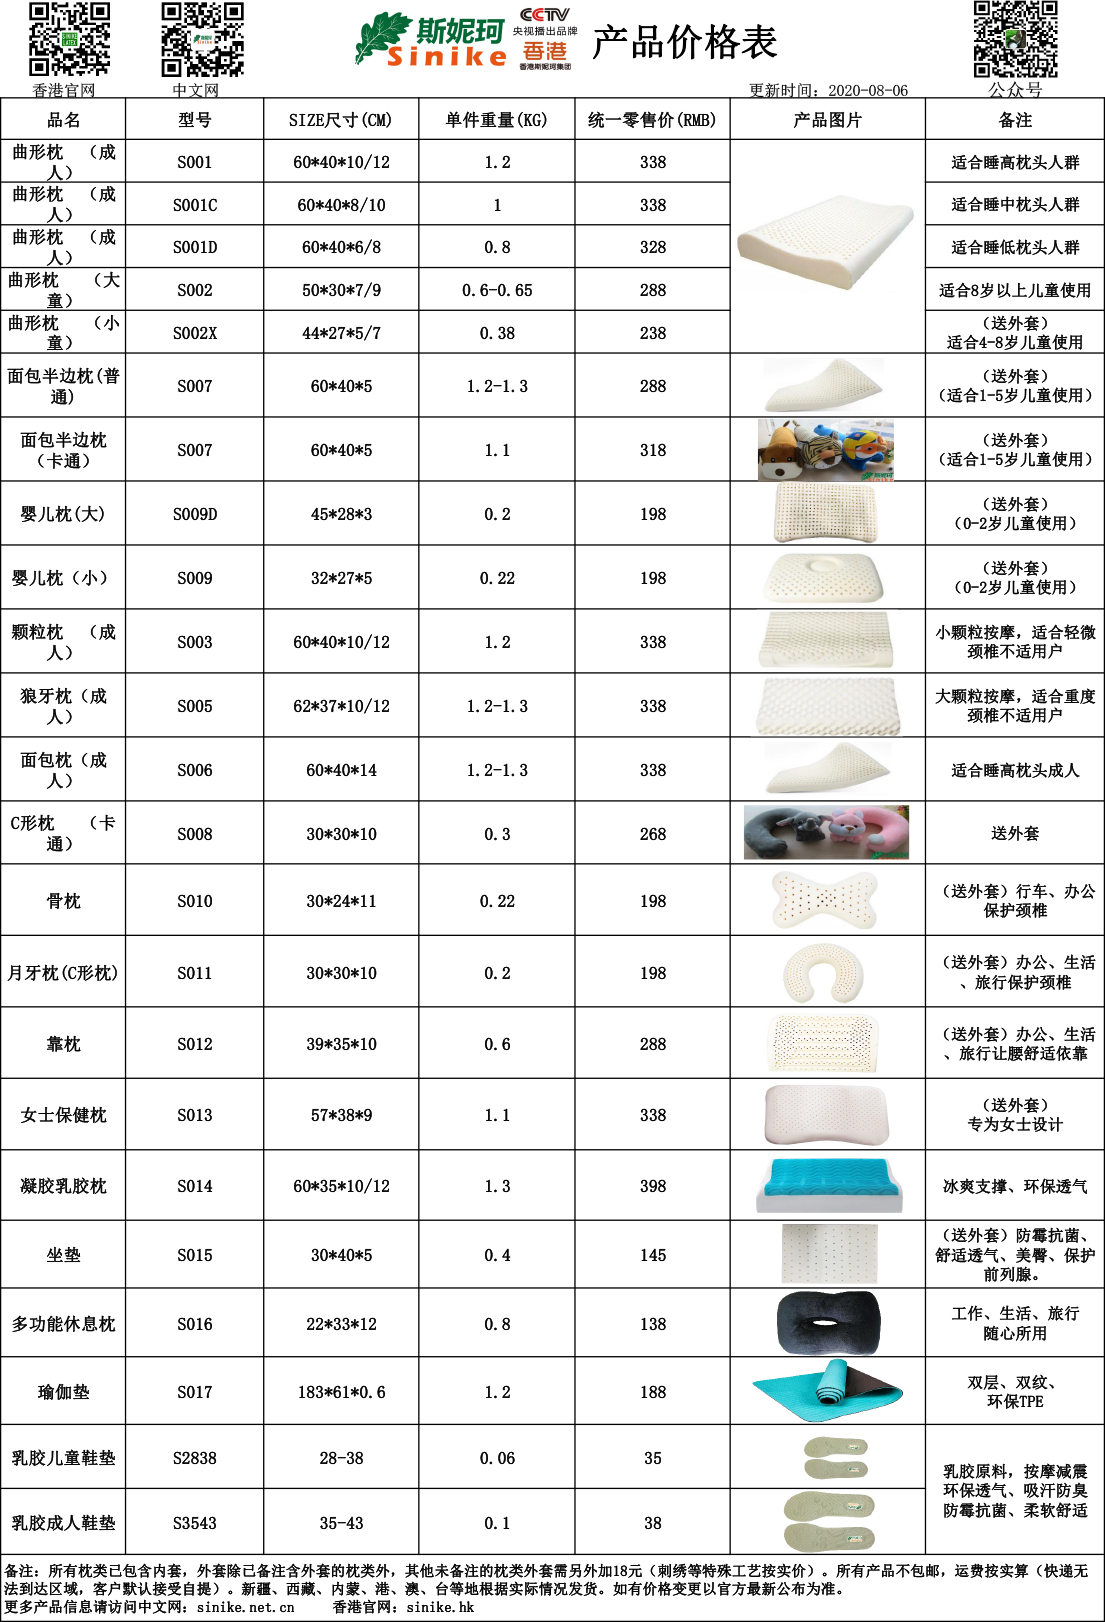 斯妮珂枕类产品价格表 (2020-08-06)-1.jpg